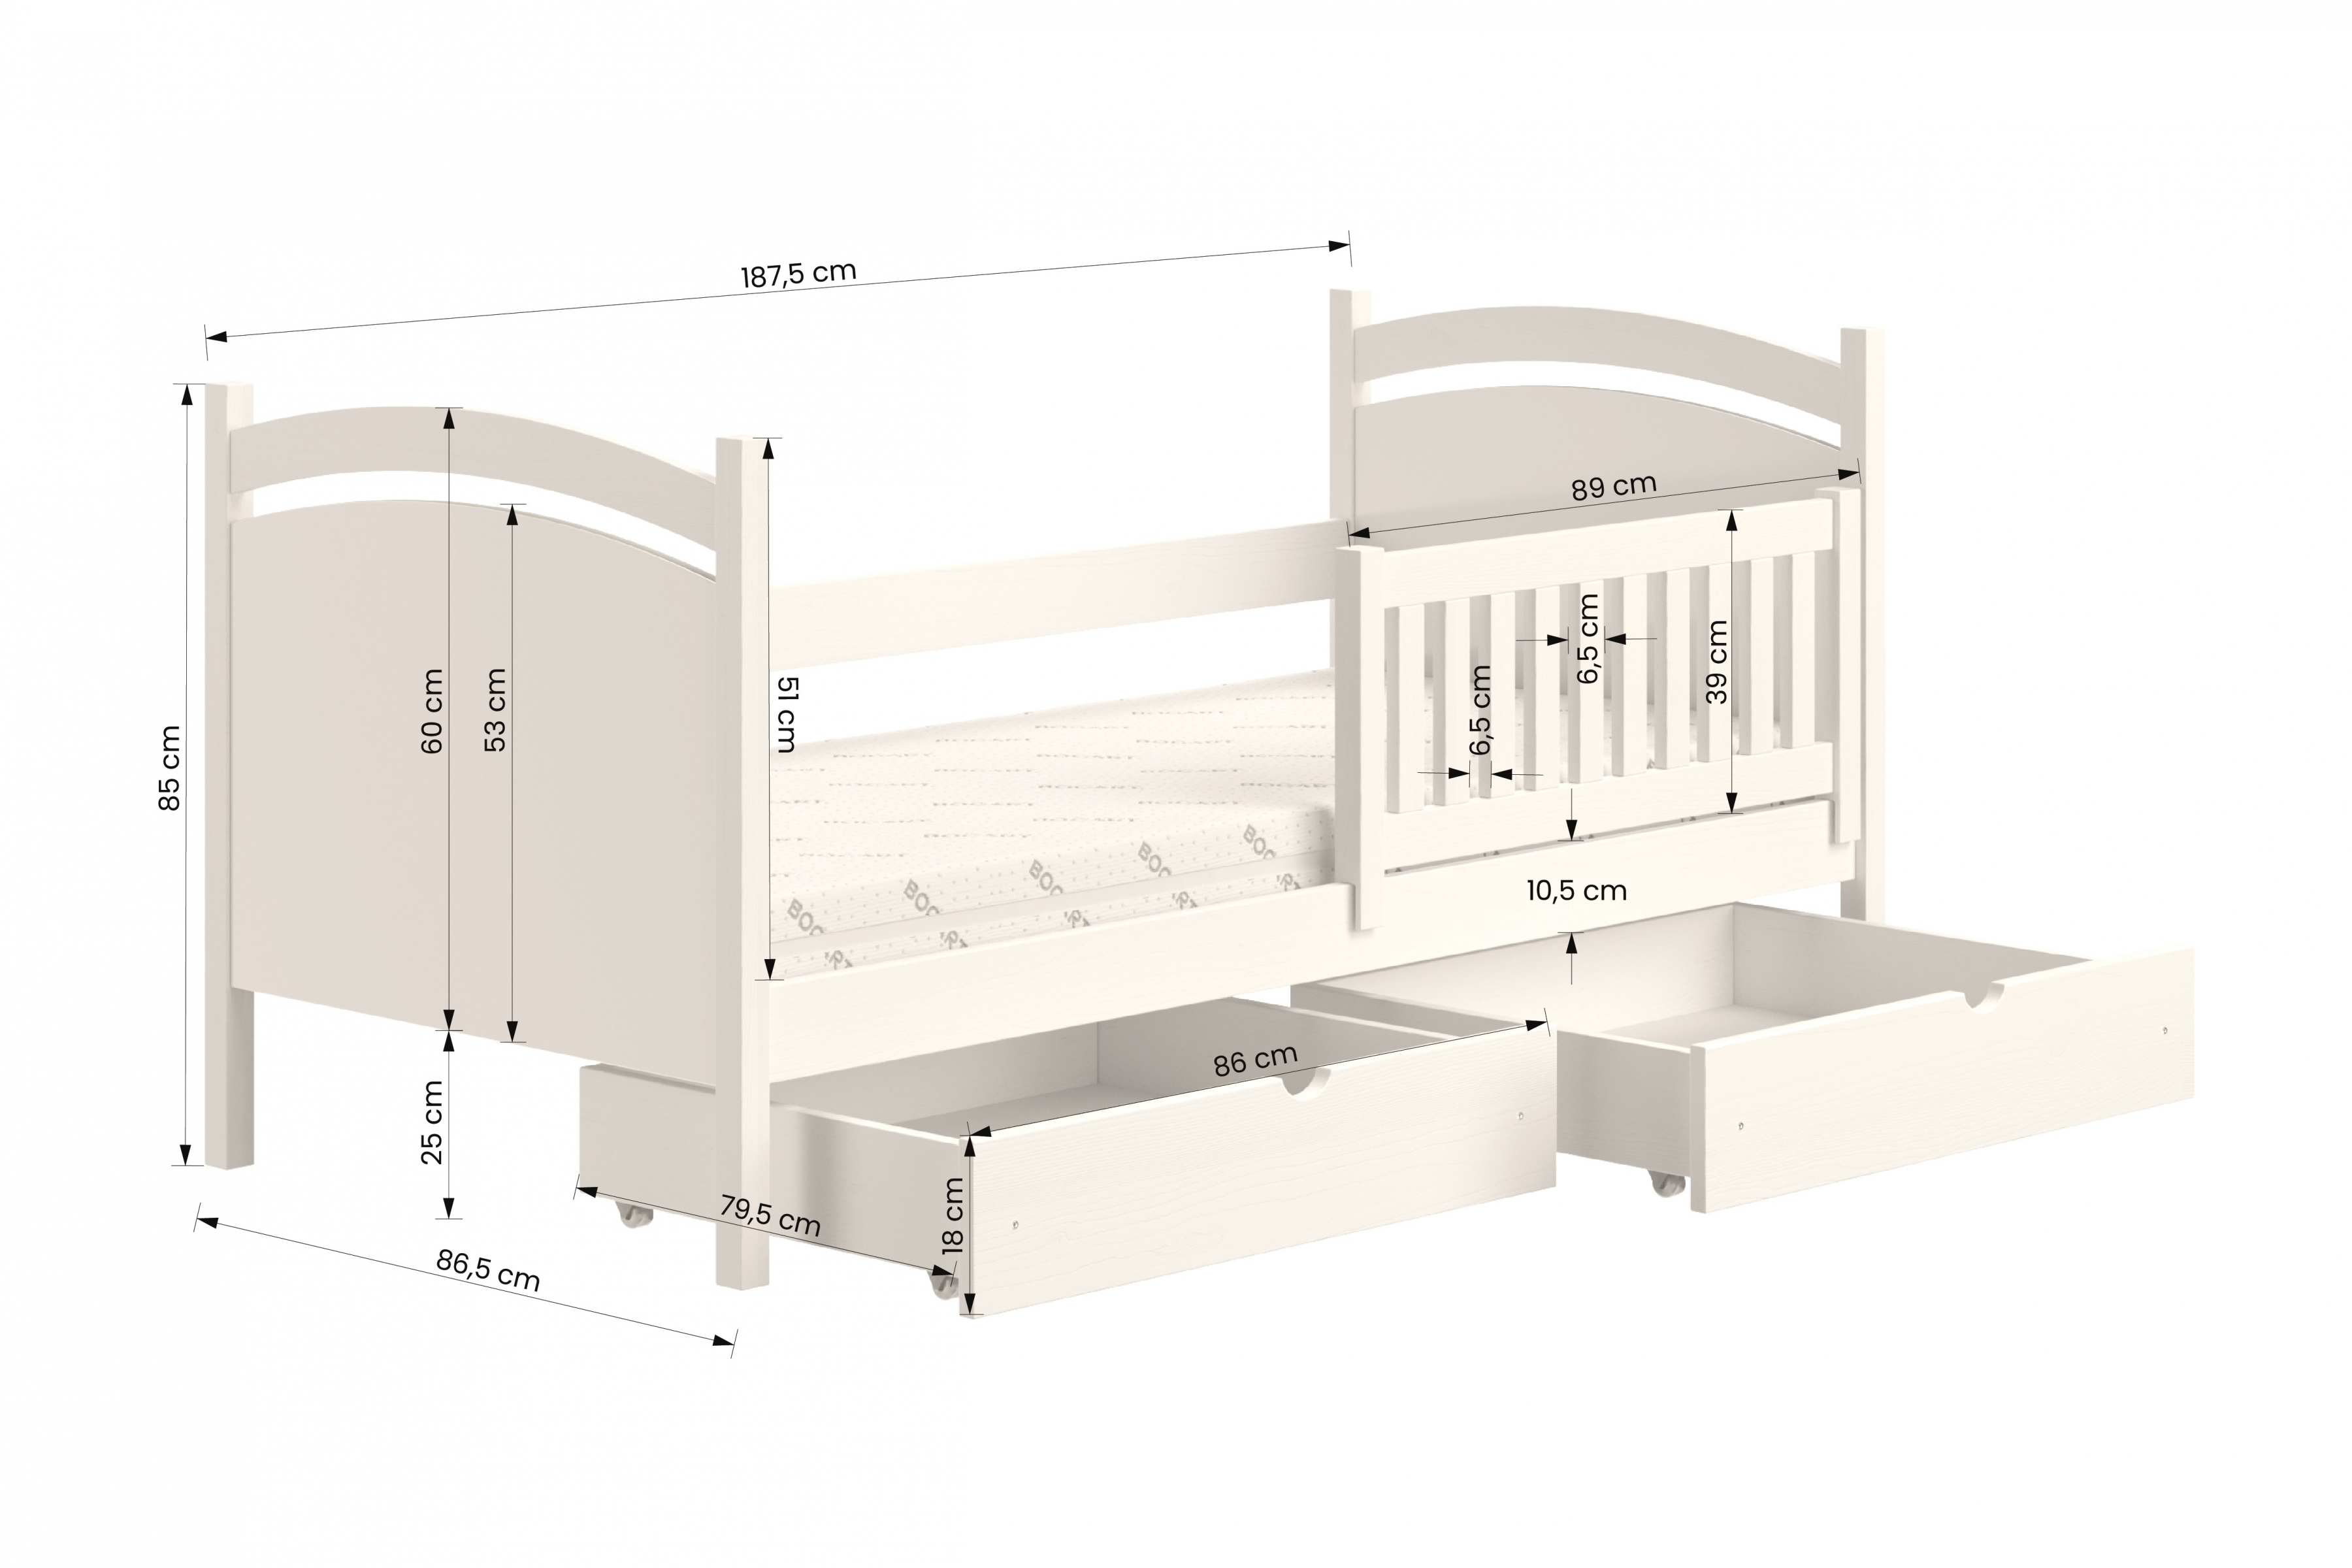 Detská posteľ s tabuľou Amely - Farba šedý, rozmer 80x180 Posteľ dzieciece z tablica suchoscieralna Amely - Rozmery